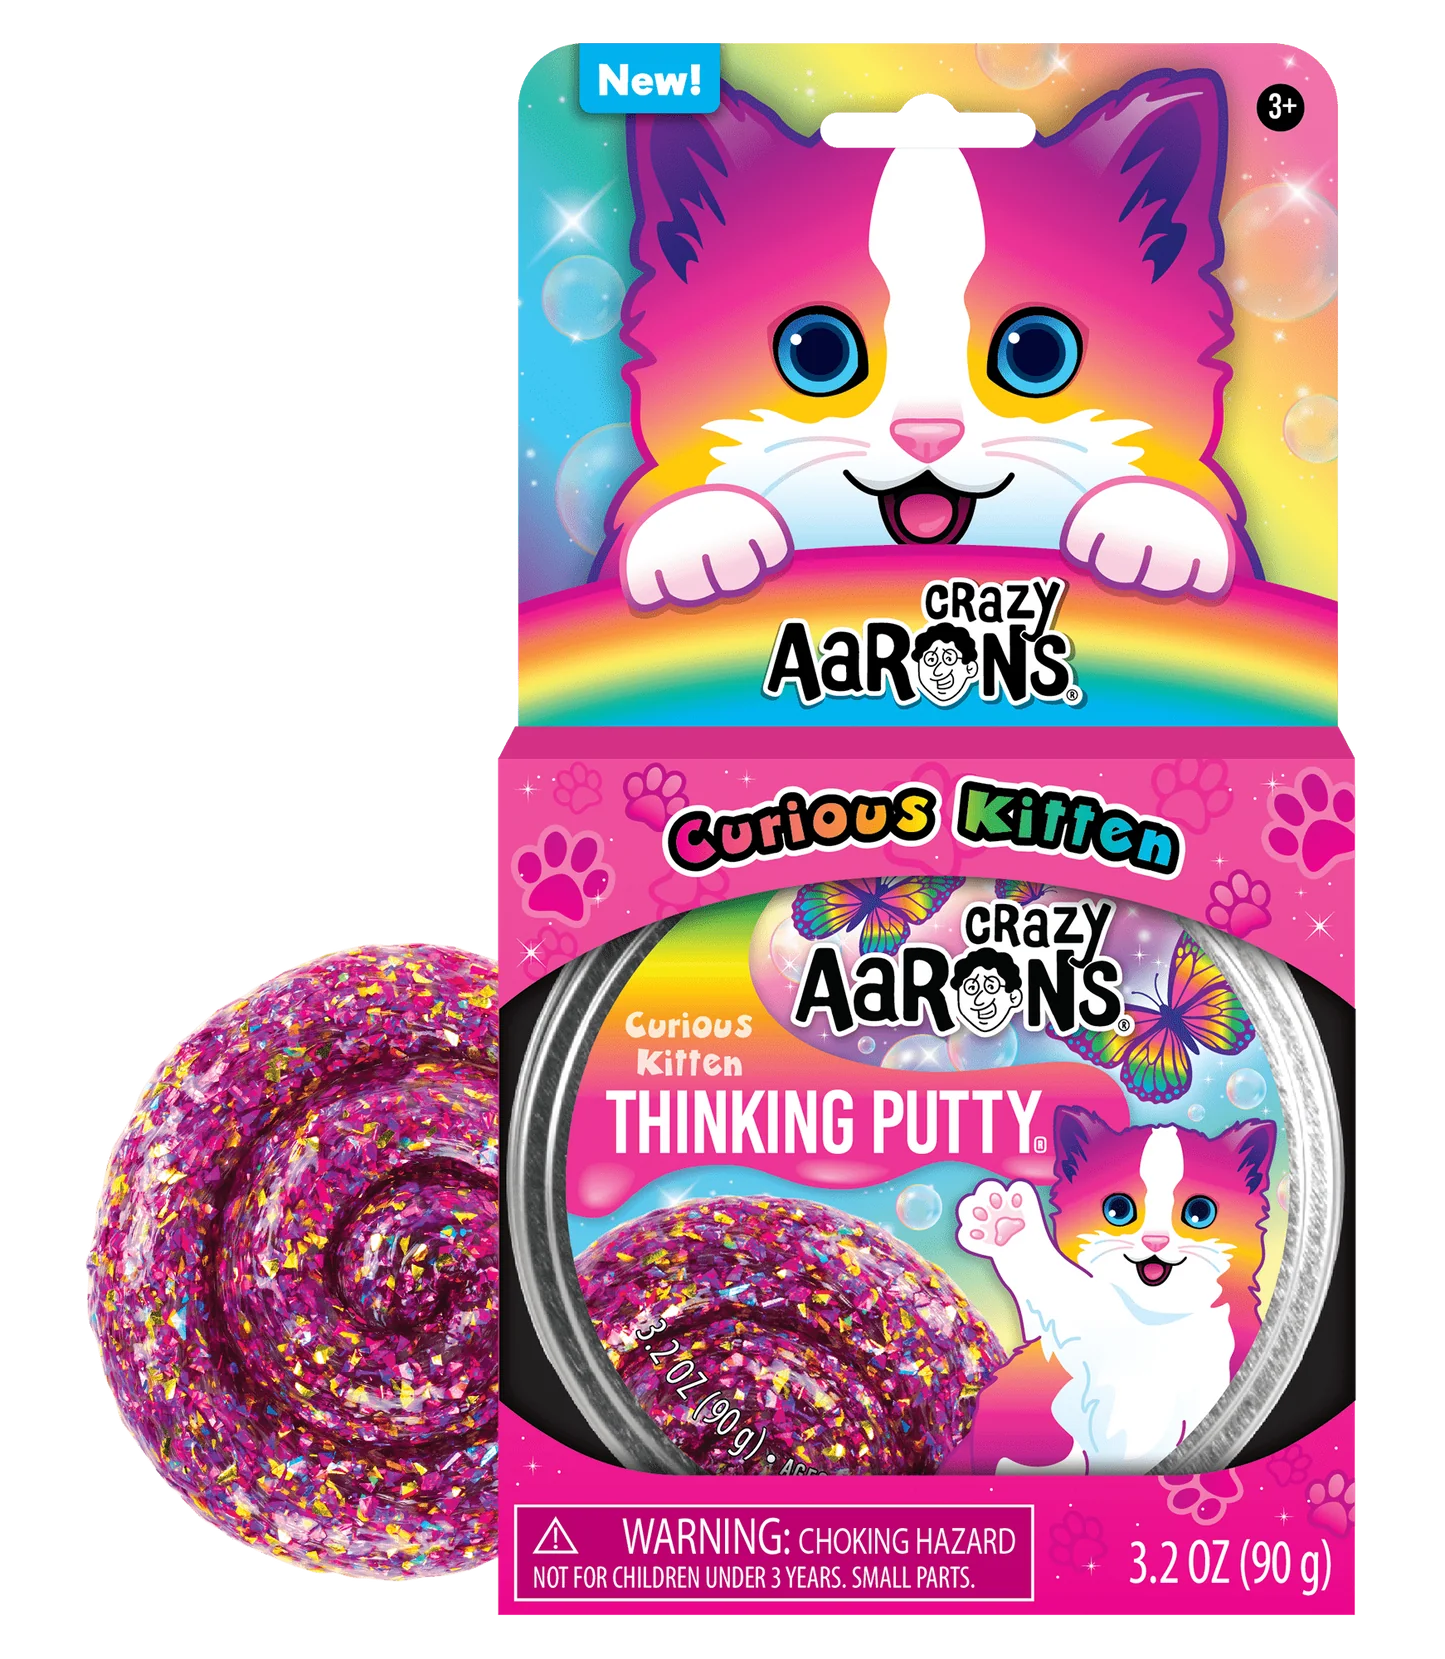 Crazy Aaron's Thinking Putty 4” Tin - Curious Kitten